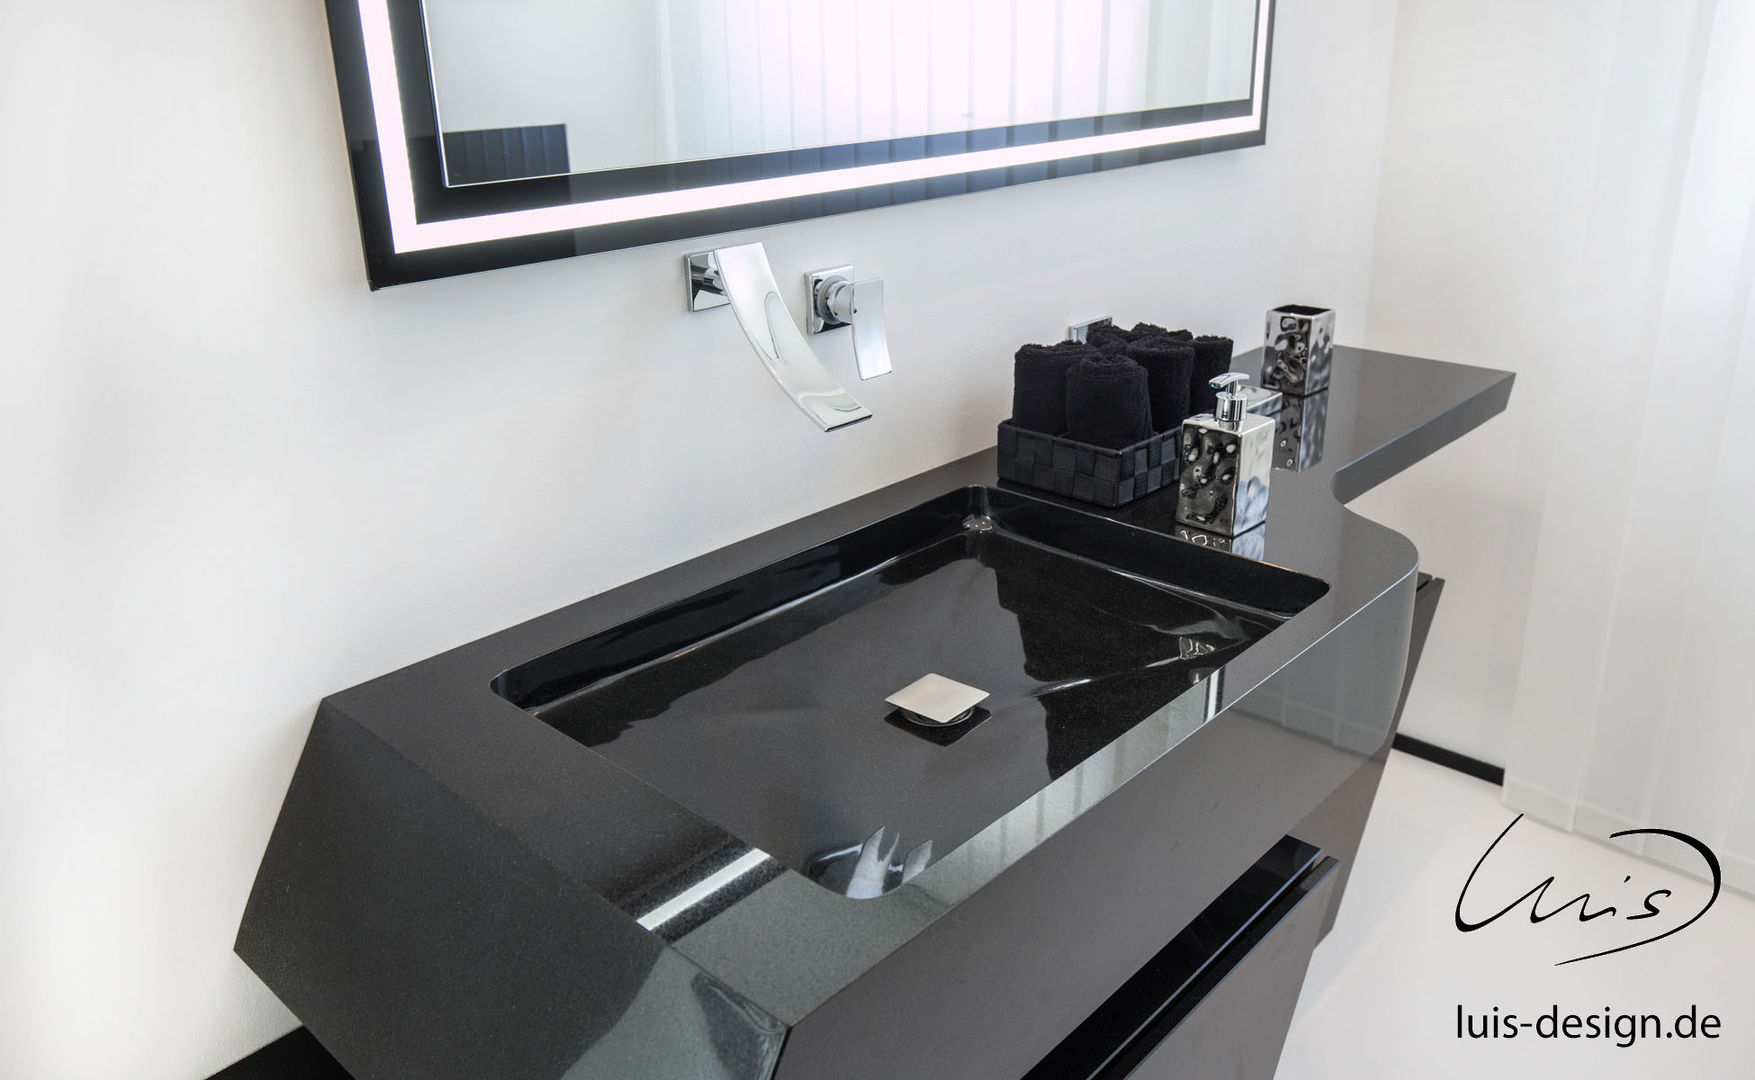 Luxury sink by Luis Design, Luis Design Luis Design 모던스타일 욕실 돌 싱크